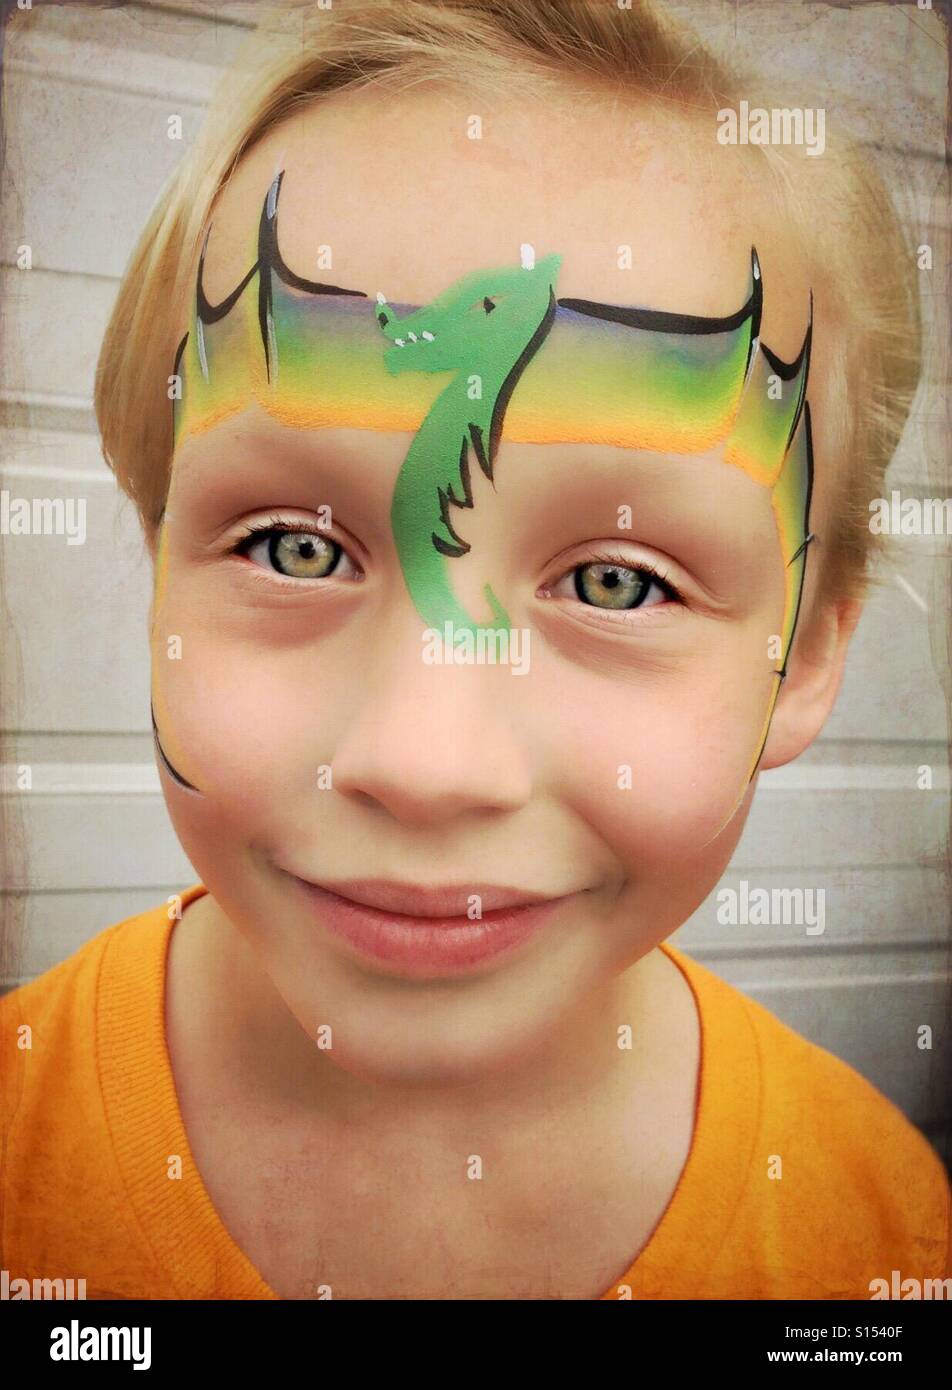 Junges Mädchen mit grünen Sterne Gesicht malen über Auge Stockfotografie -  Alamy